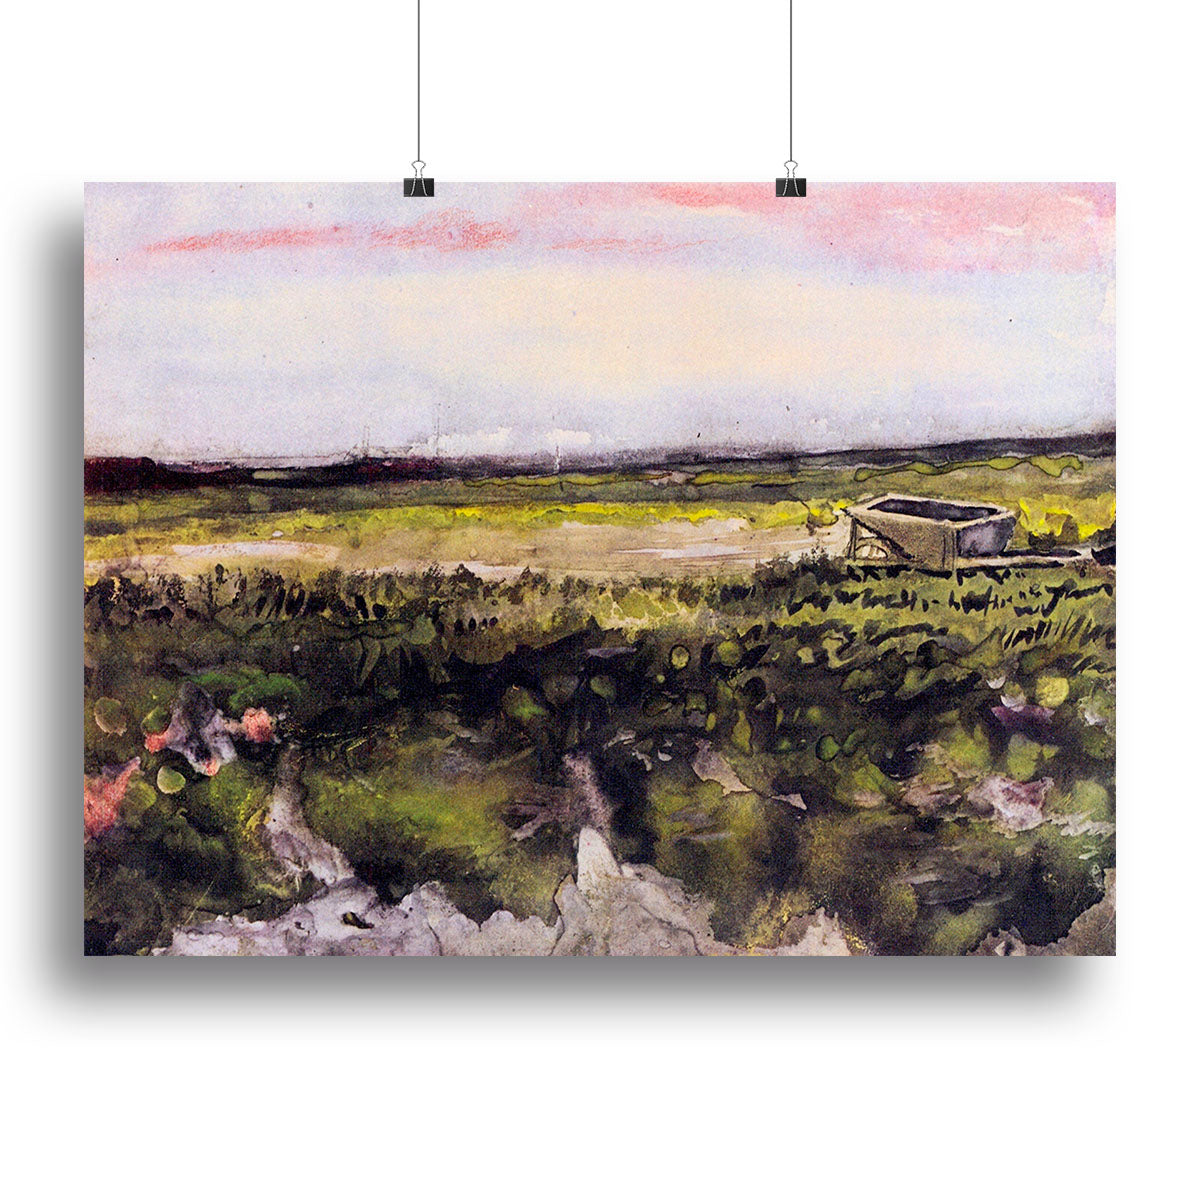 The Heath with a Wheelbarrow by Van Gogh Canvas Print or Poster - Canvas Art Rocks - 2